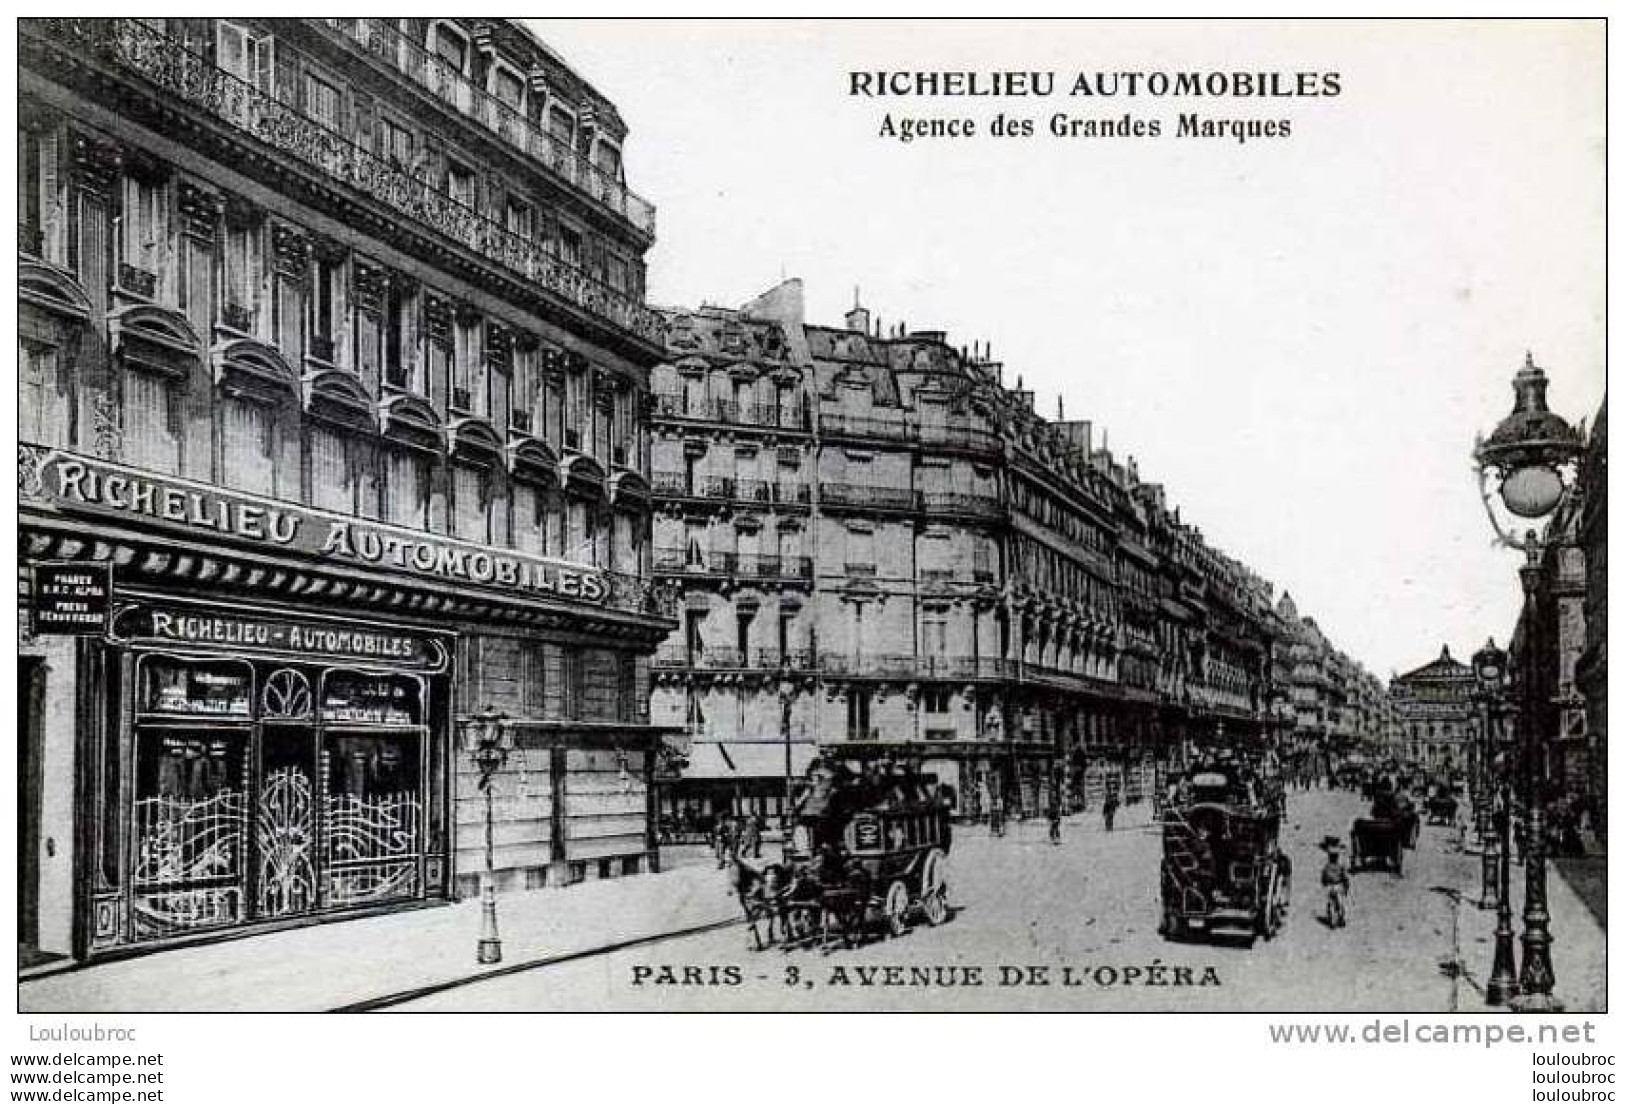 75 PARIS RICHELIEU AUTOMOBILES AGENCE DE GRANDES MARQUES 3 AVENUE DE L'OPERA - Arrondissement: 02